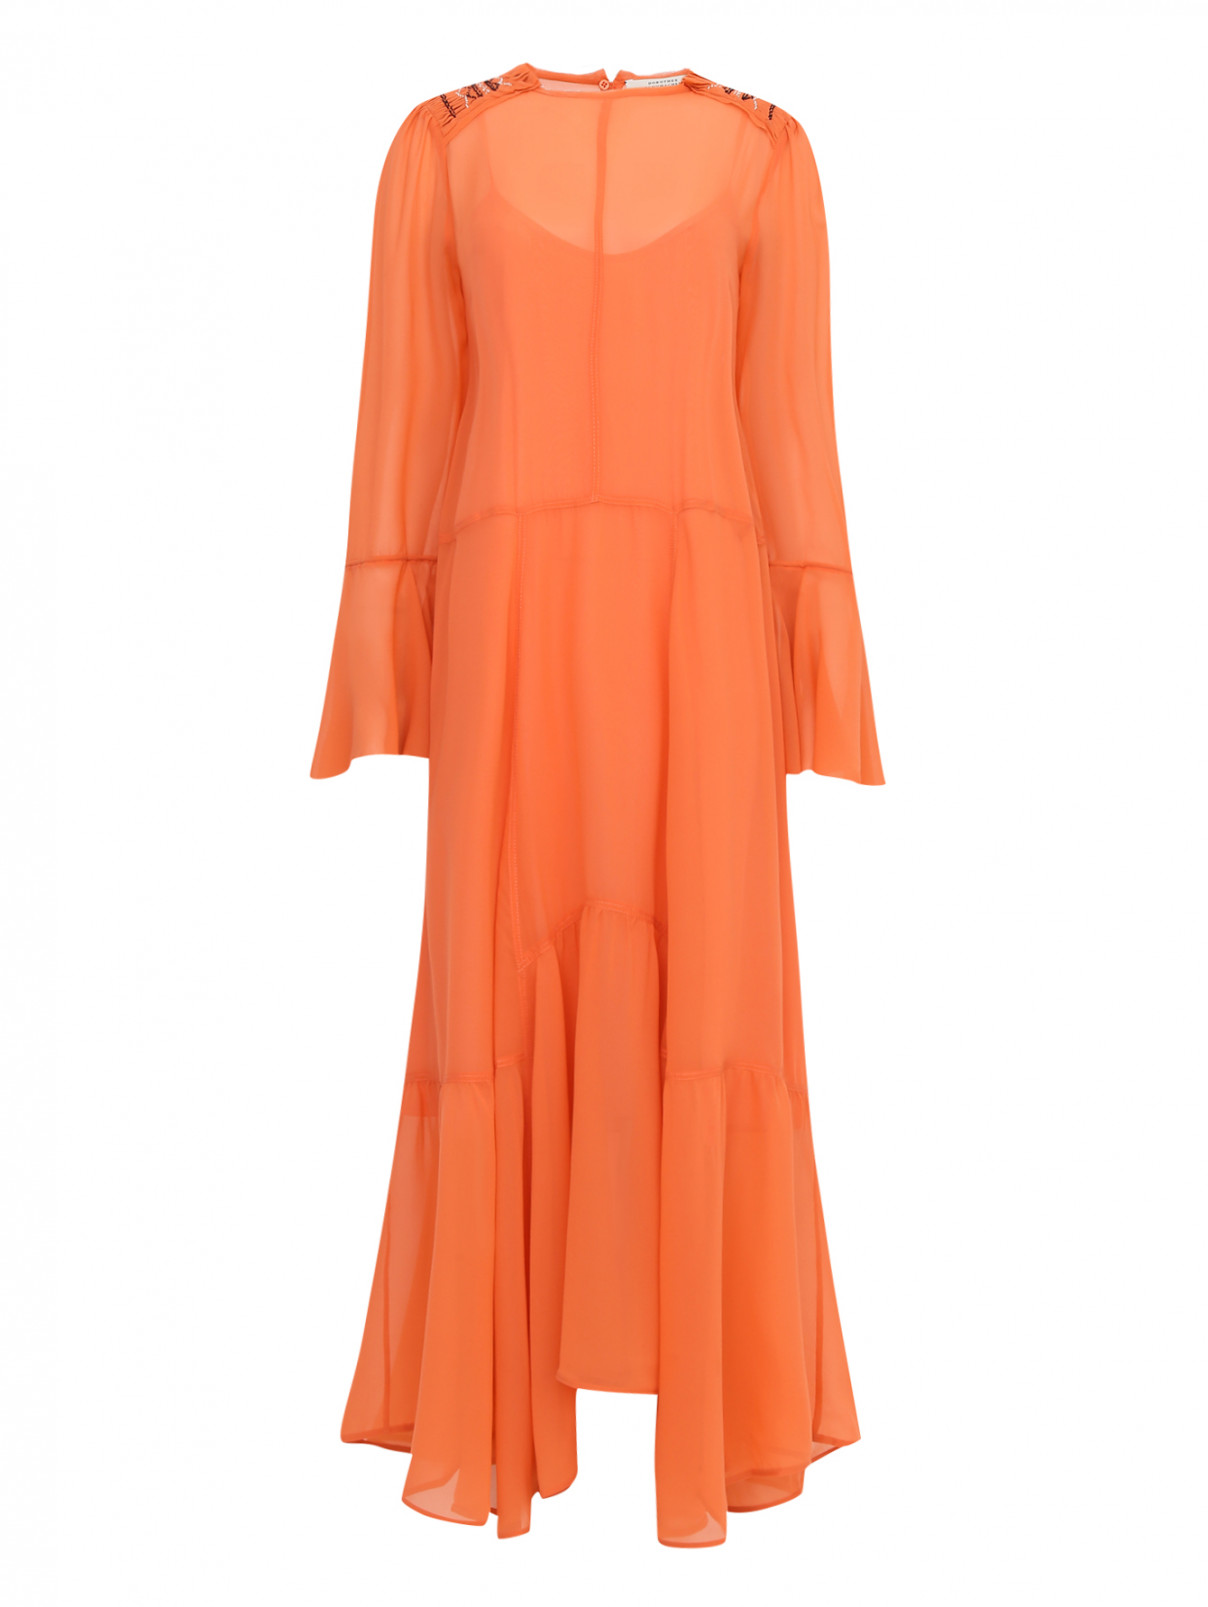 Платье-миди из шелка с декоративной отделкой Dorothee Schumacher  –  Общий вид  – Цвет:  Оранжевый